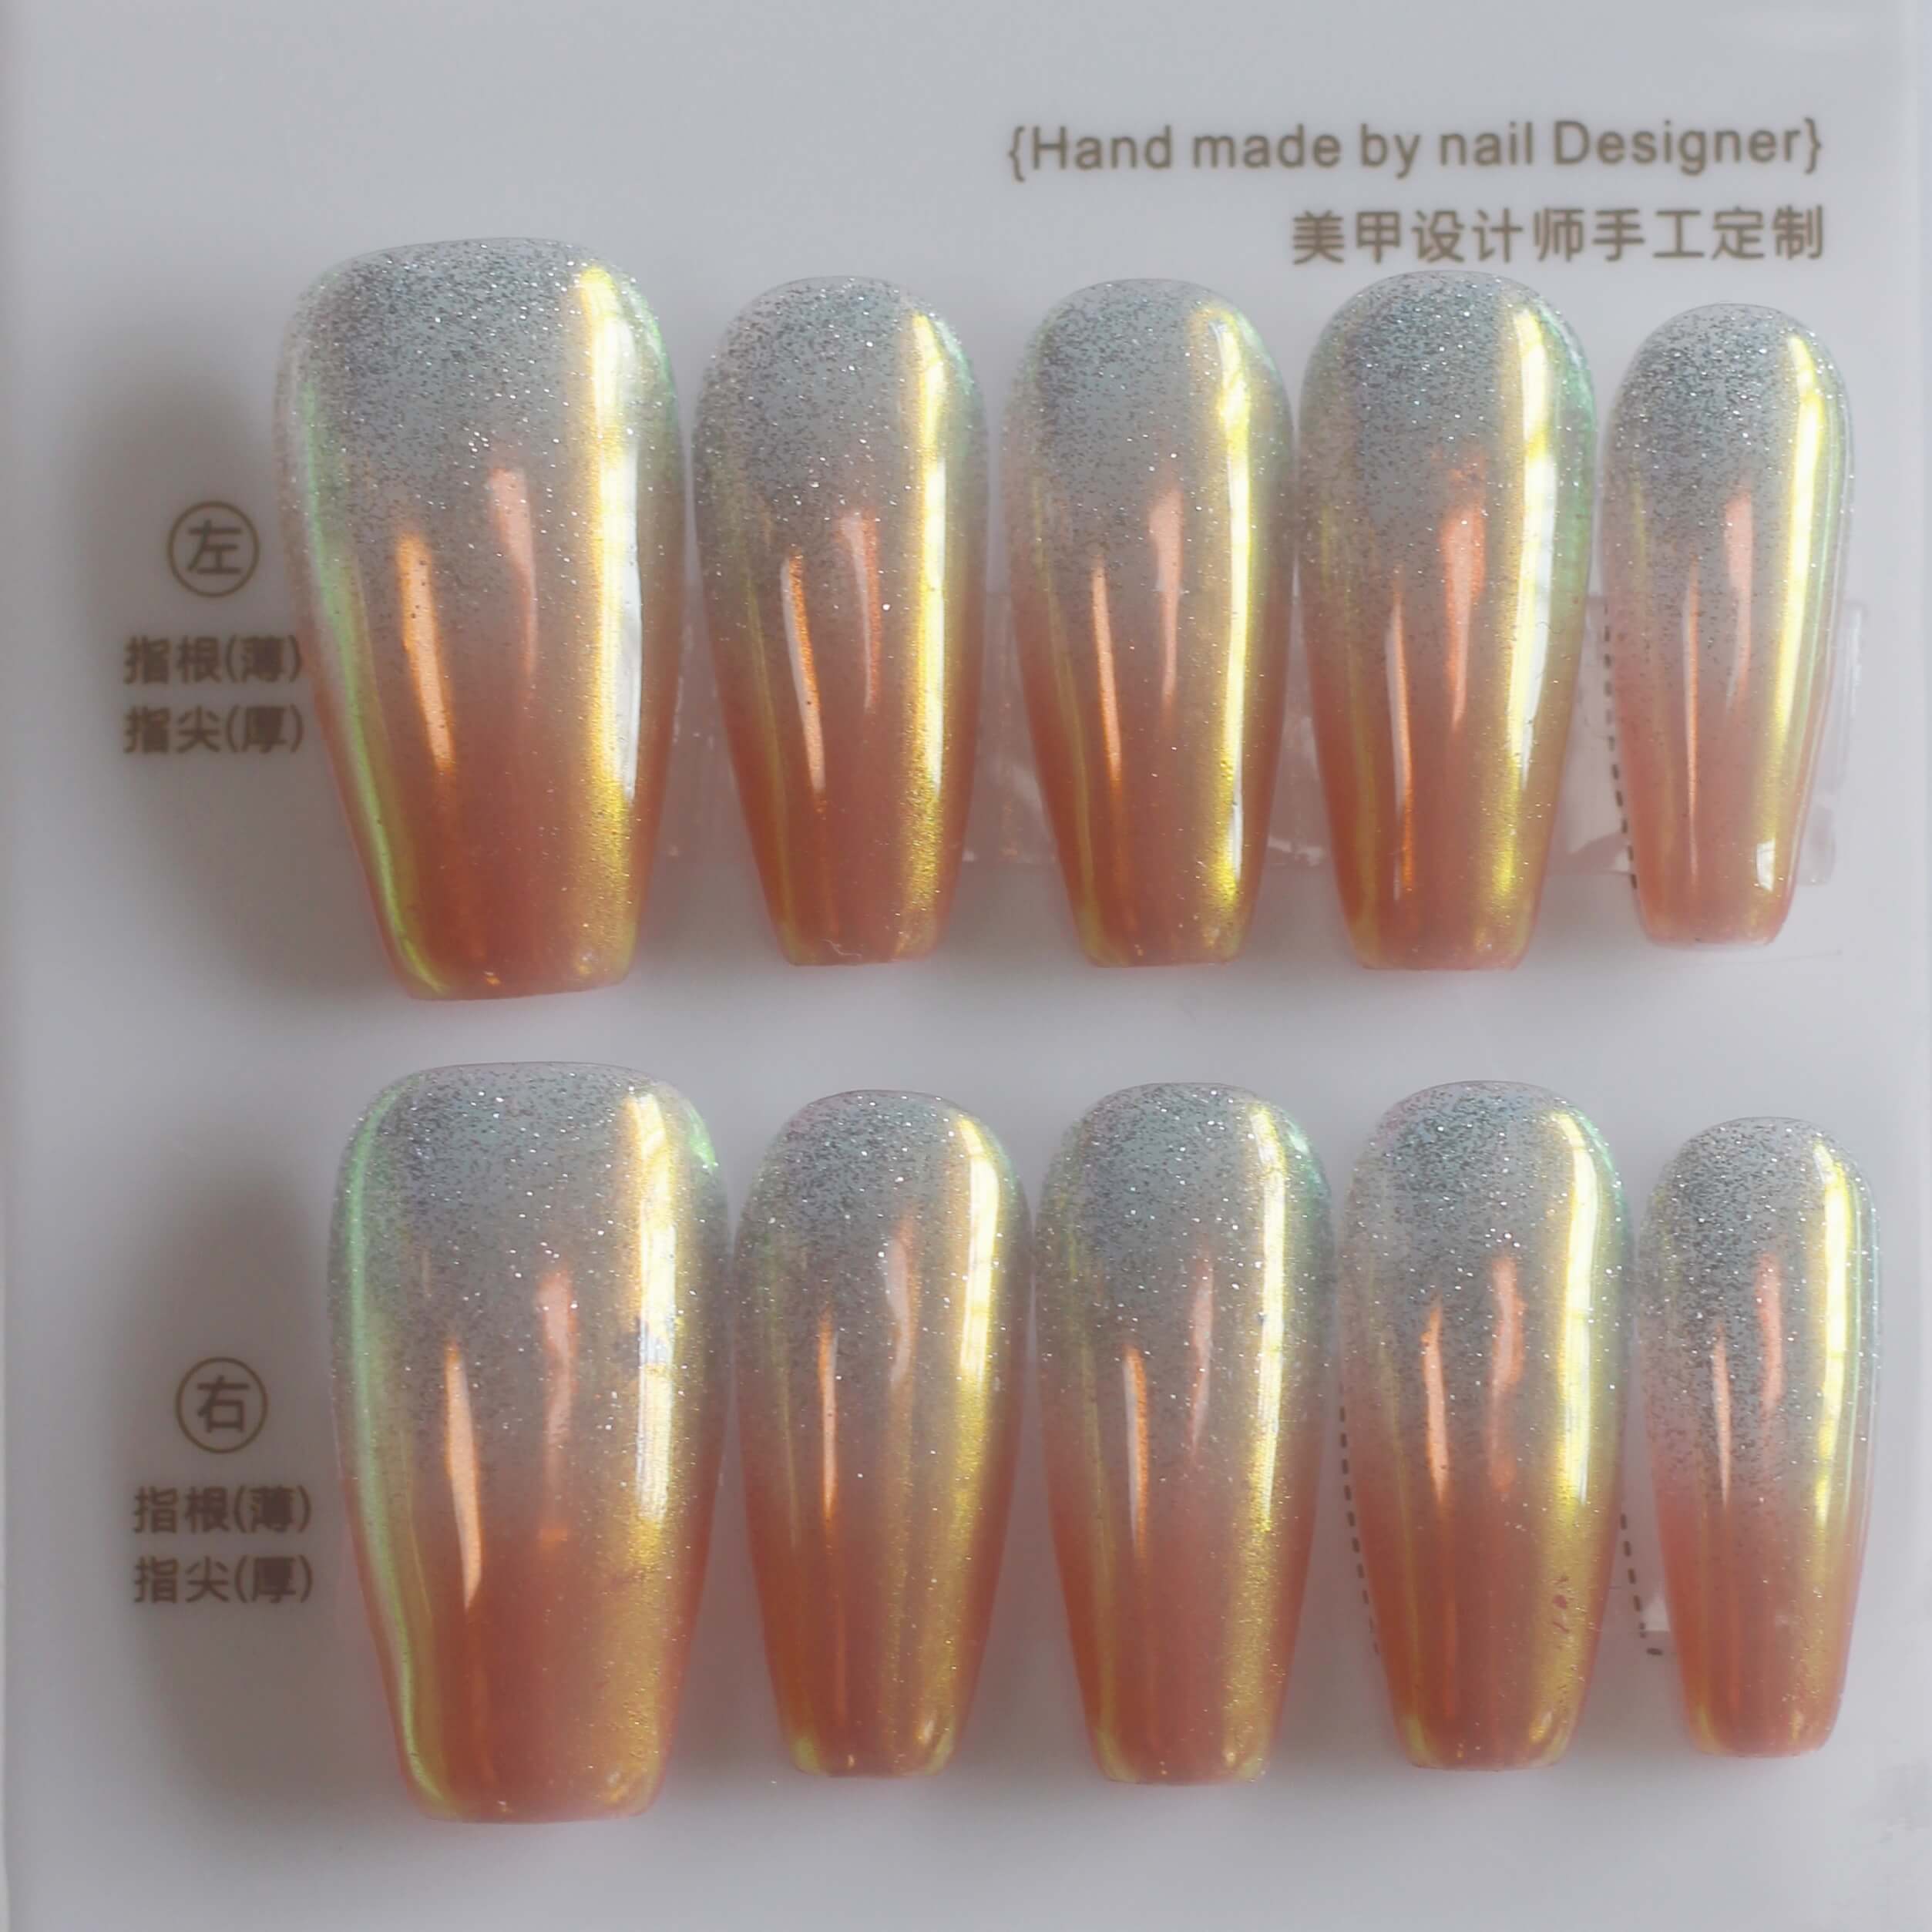 Vibeficant Progel Orange Cat Eye Ombre Handmade Gel Press on Nails Medium Coffin Glitter Design